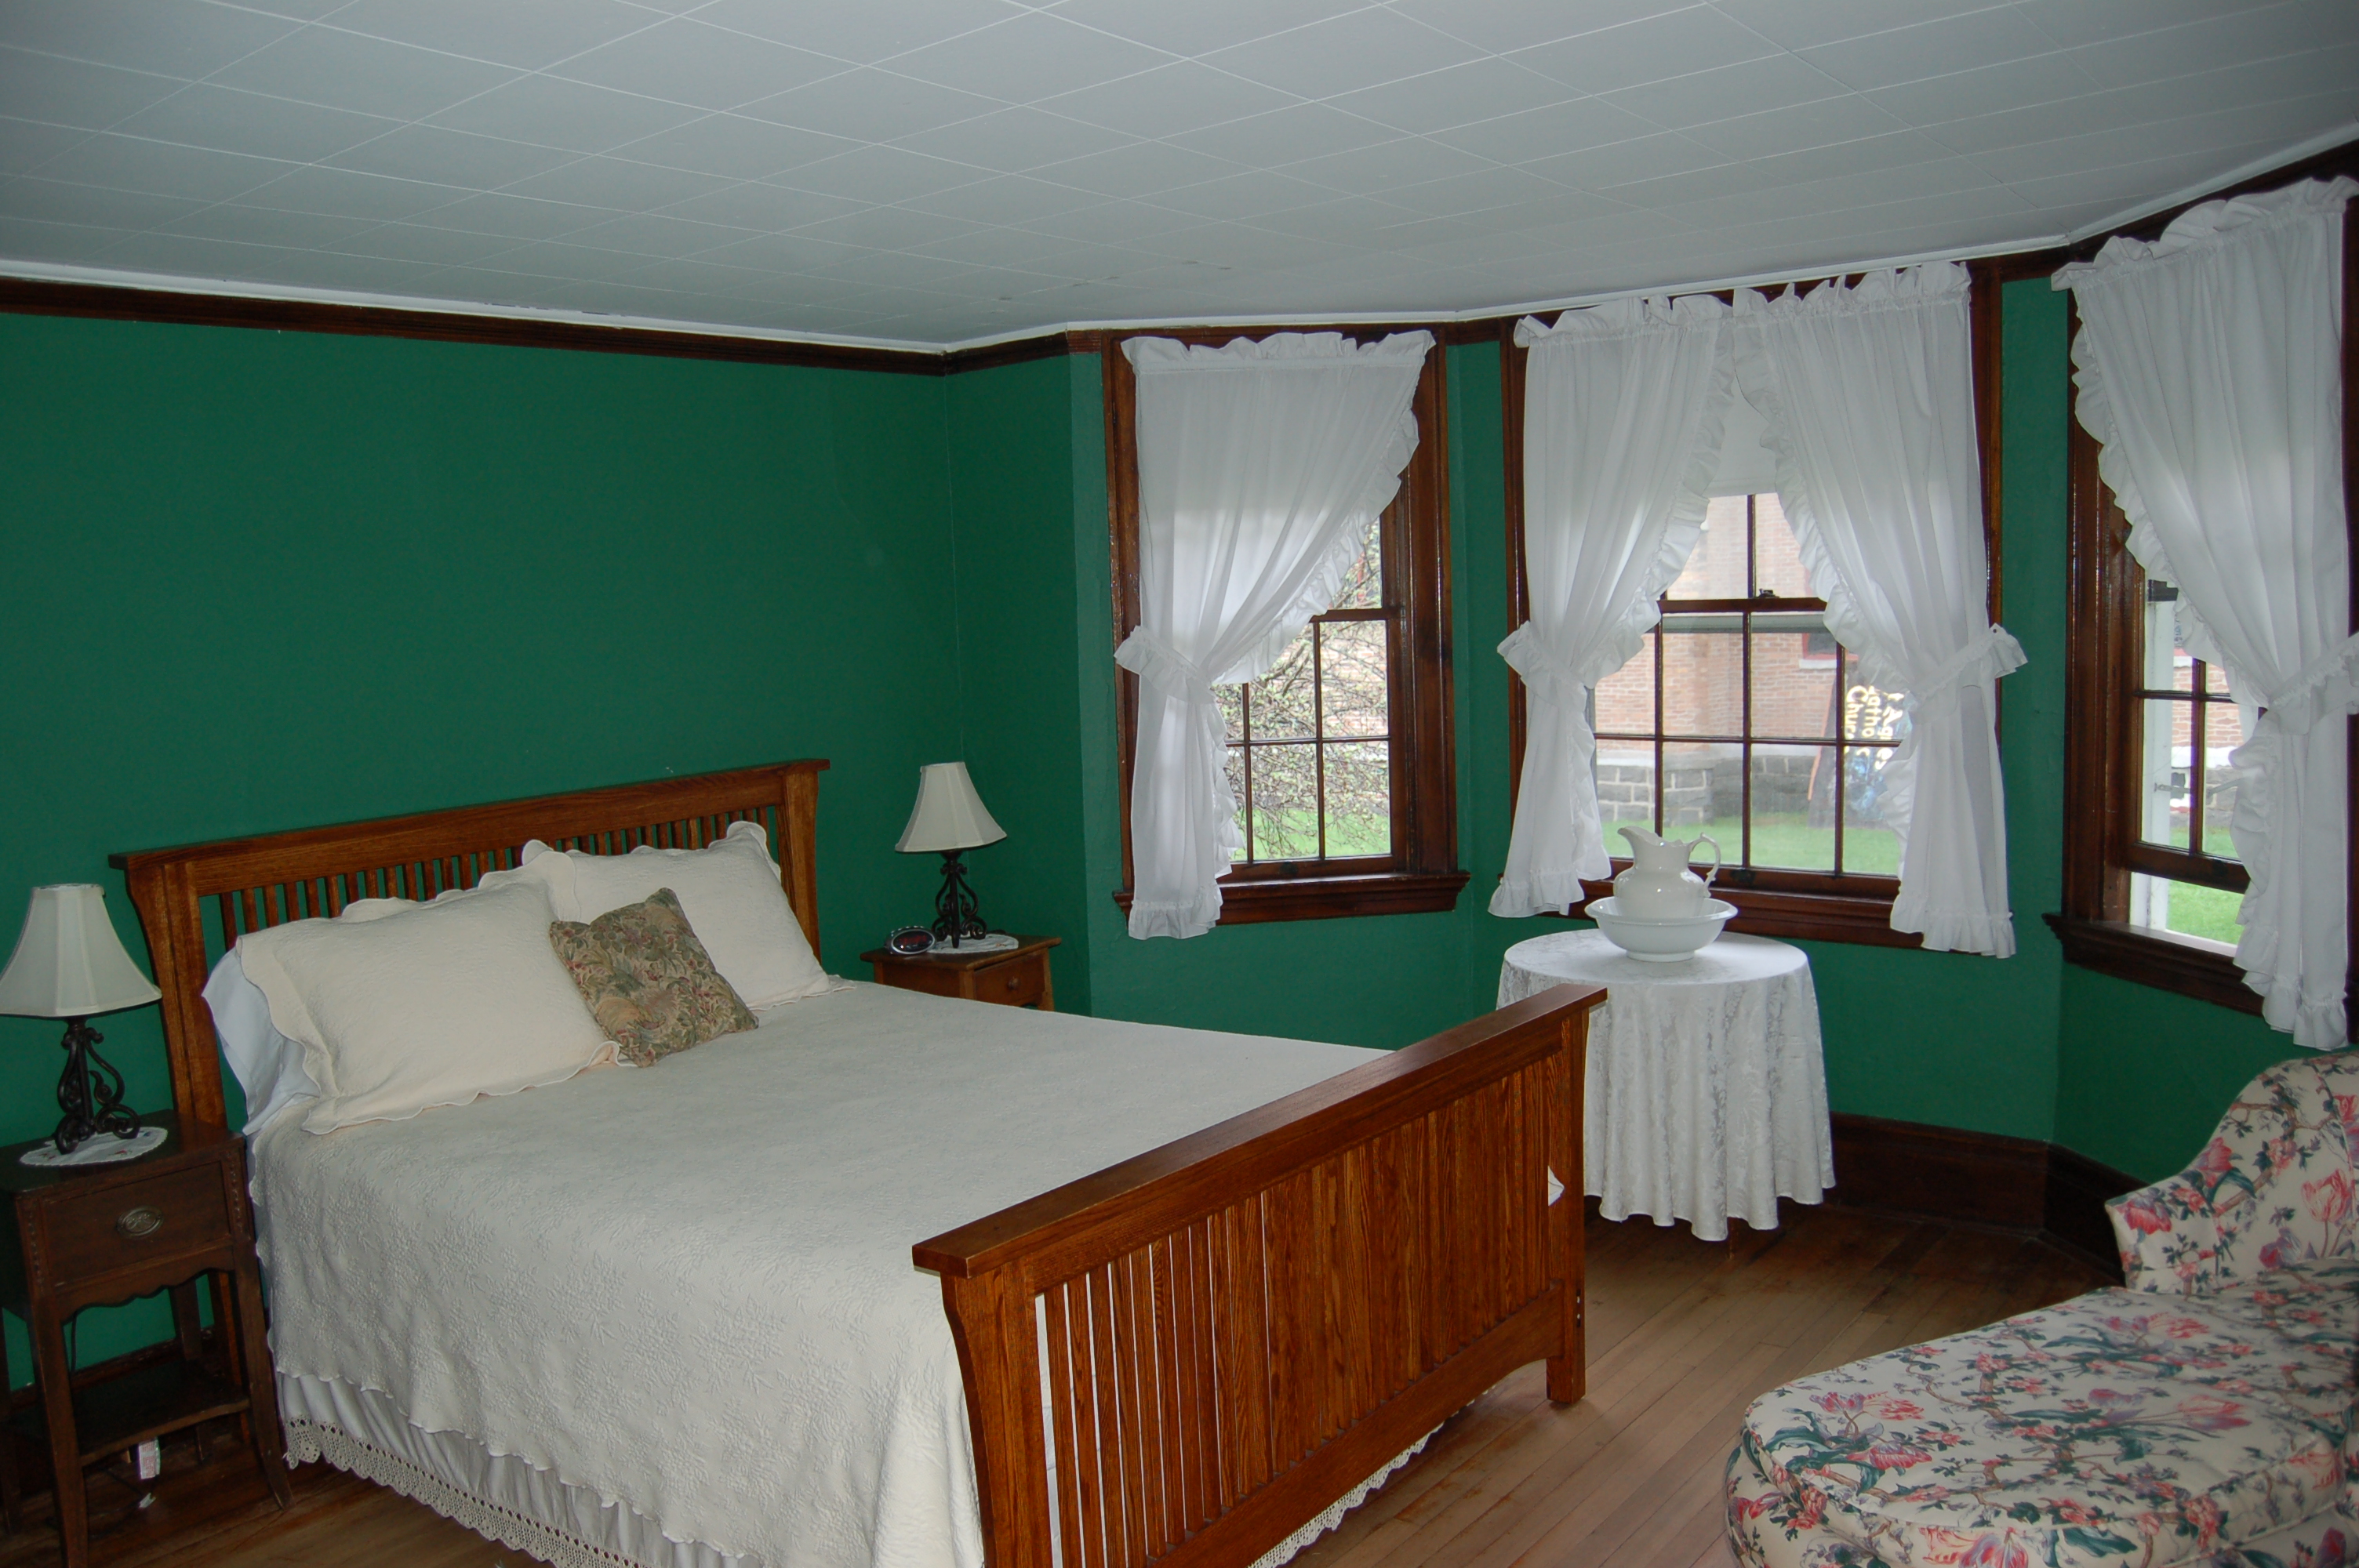 Huttlinger House - Green Room